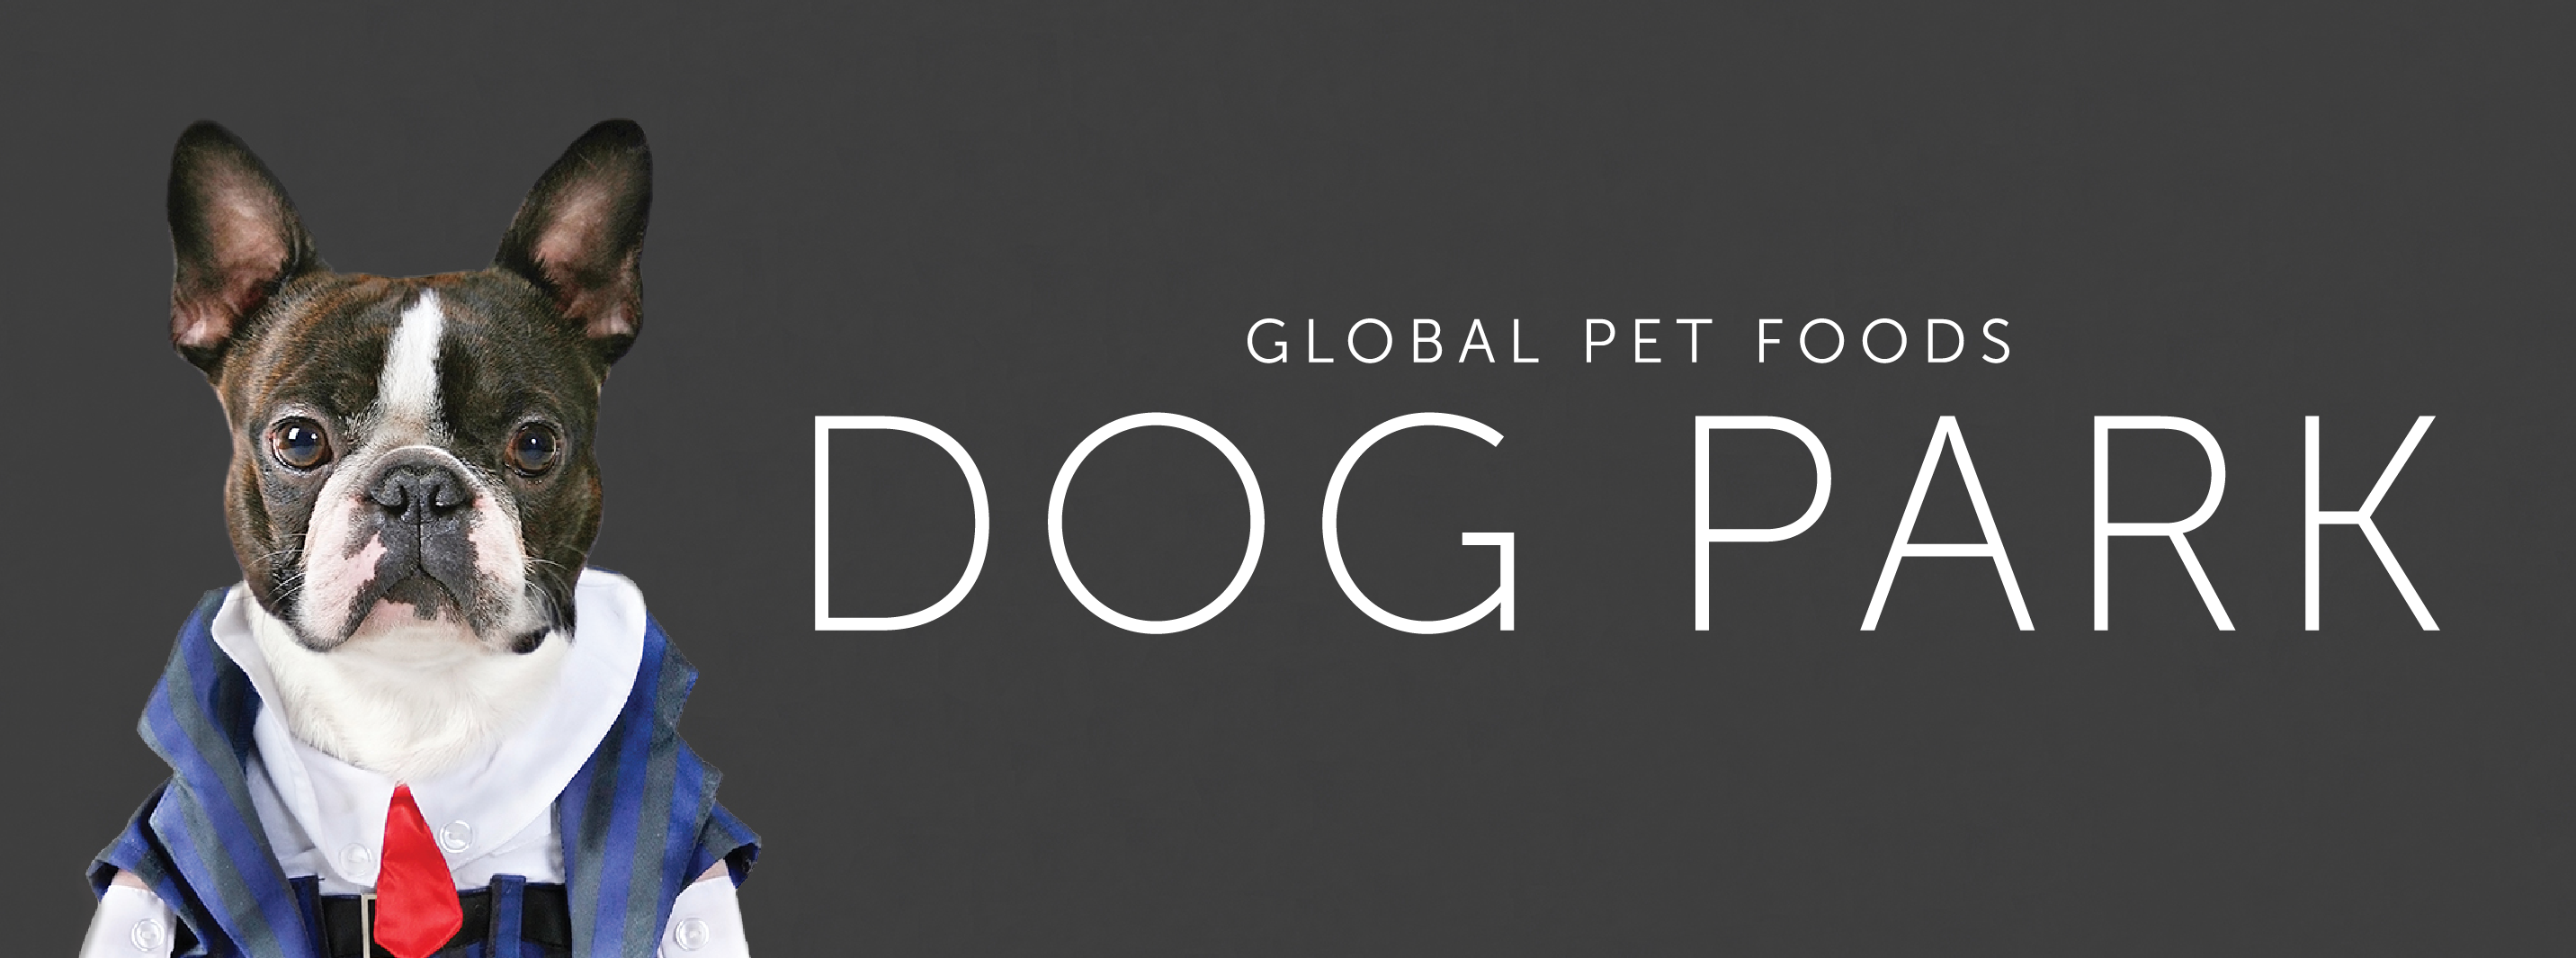 Global Pet Foods Dog Park Banner